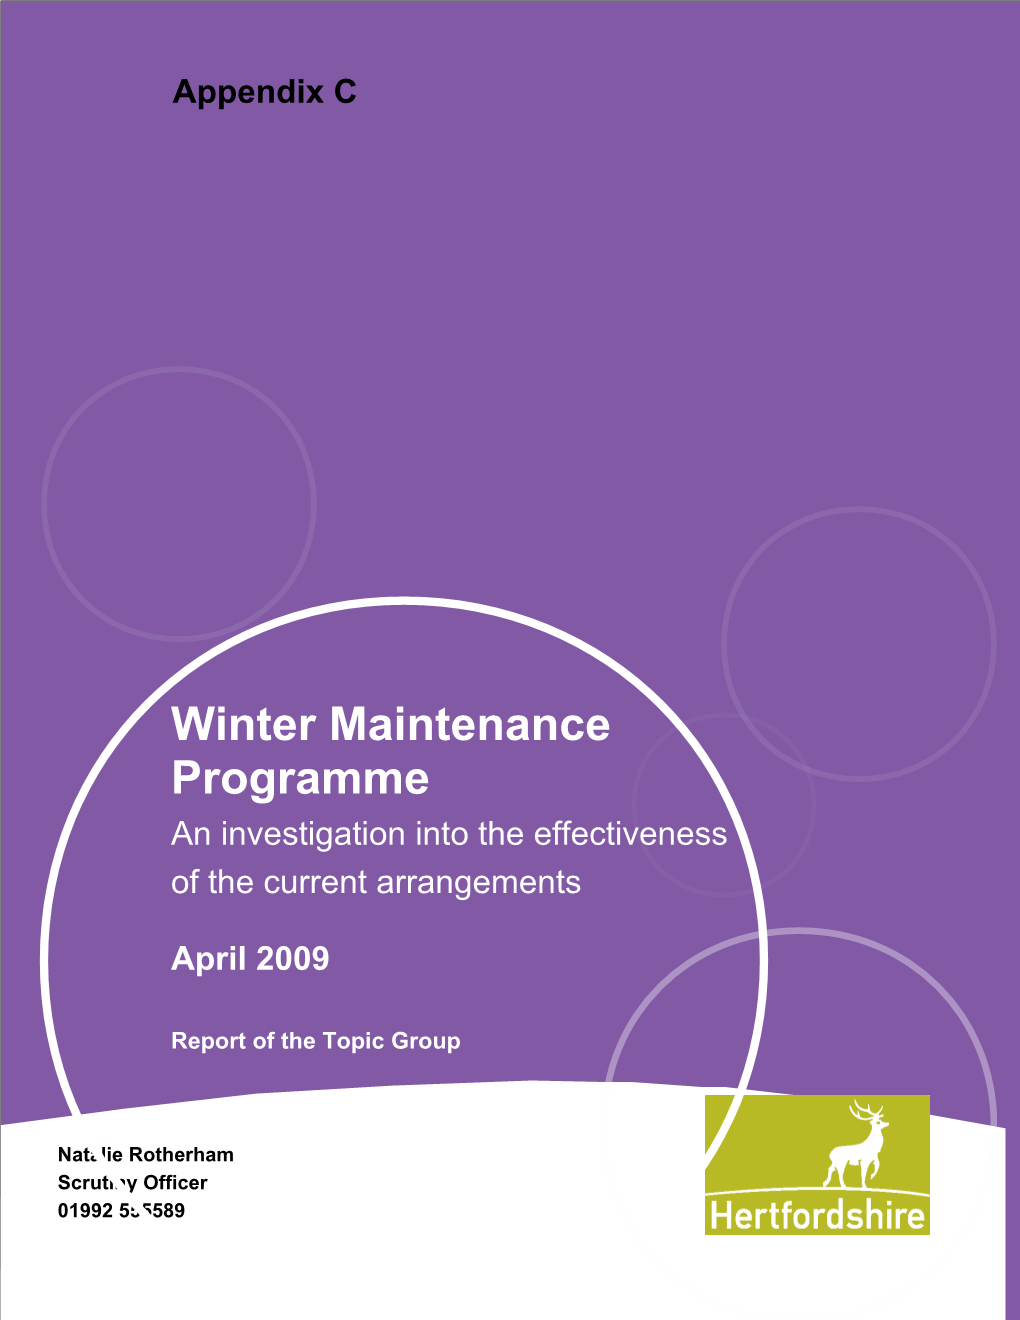 Hertfordshire Highways Winter Maintenance Programme